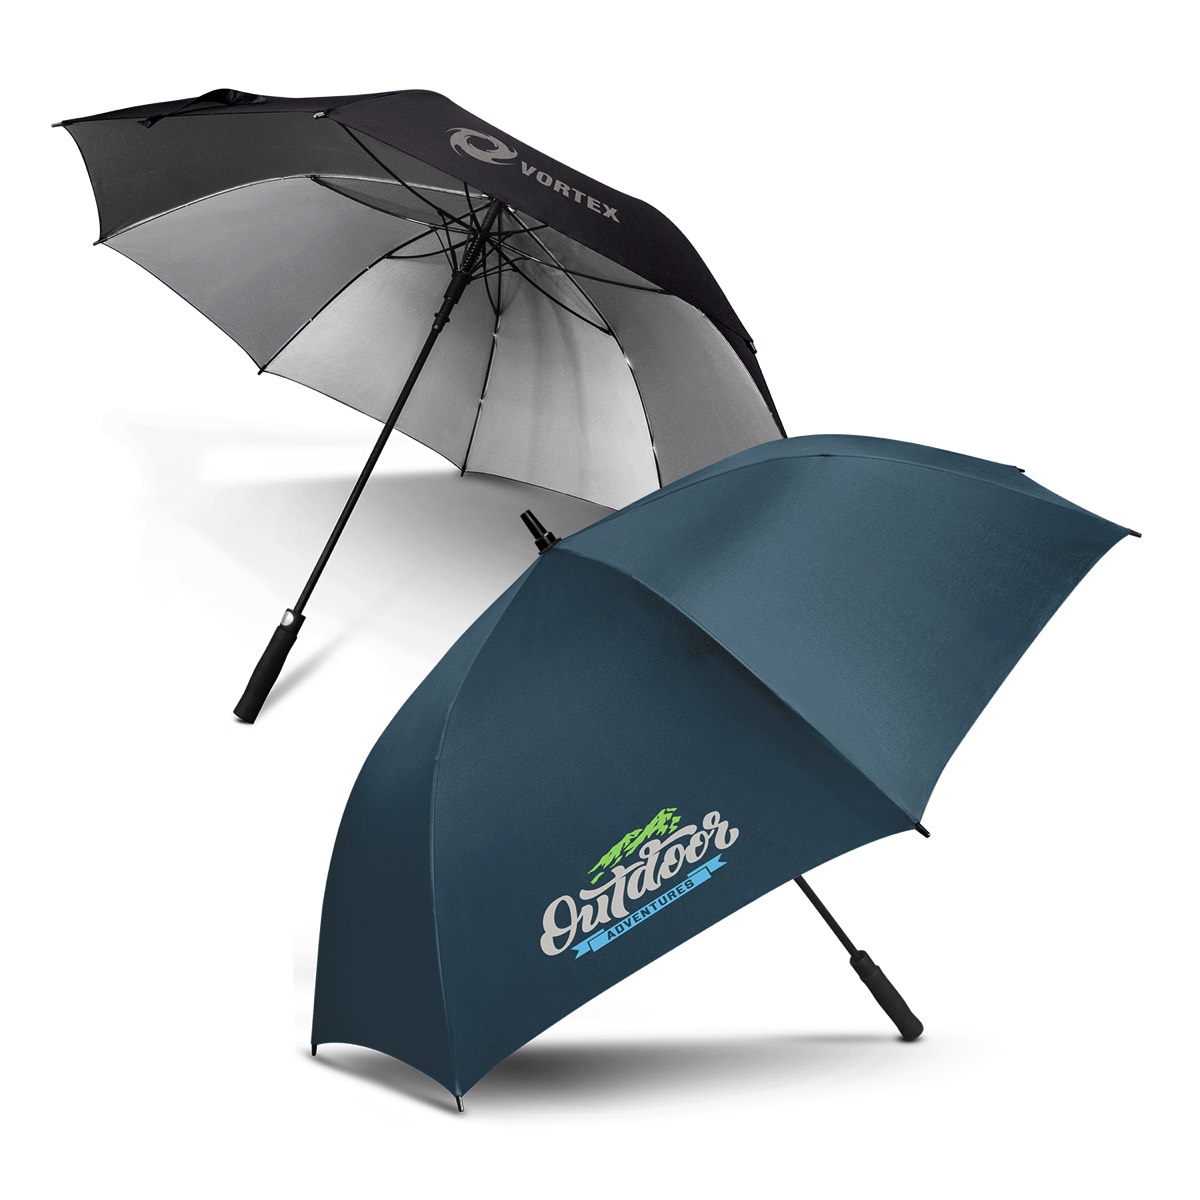 elevate elegant corporate style umbrella